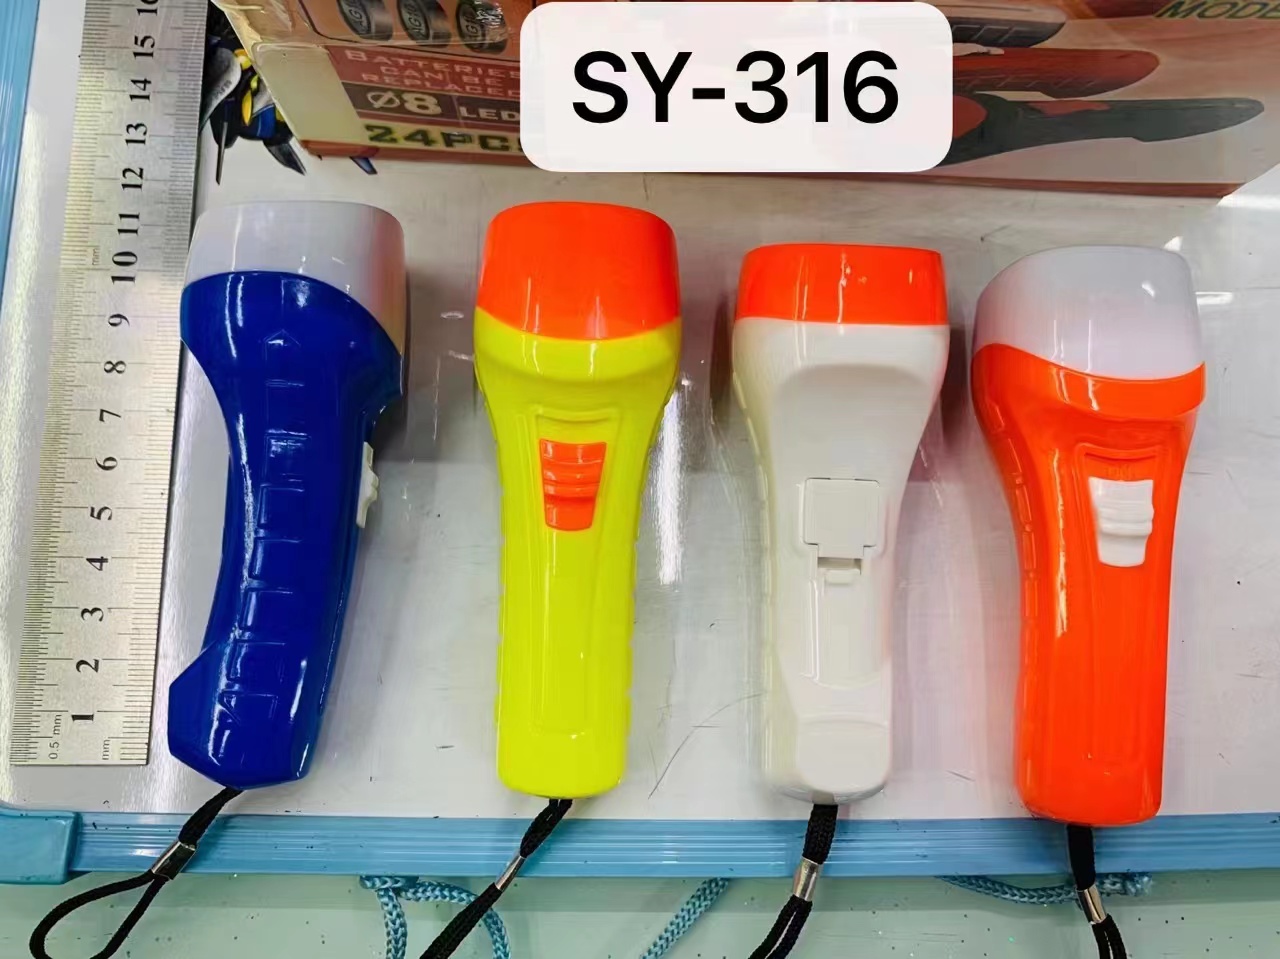 白光手电筒  LED手电筒  塑料纽扣电池手电筒 SY-316手电筒详情图2